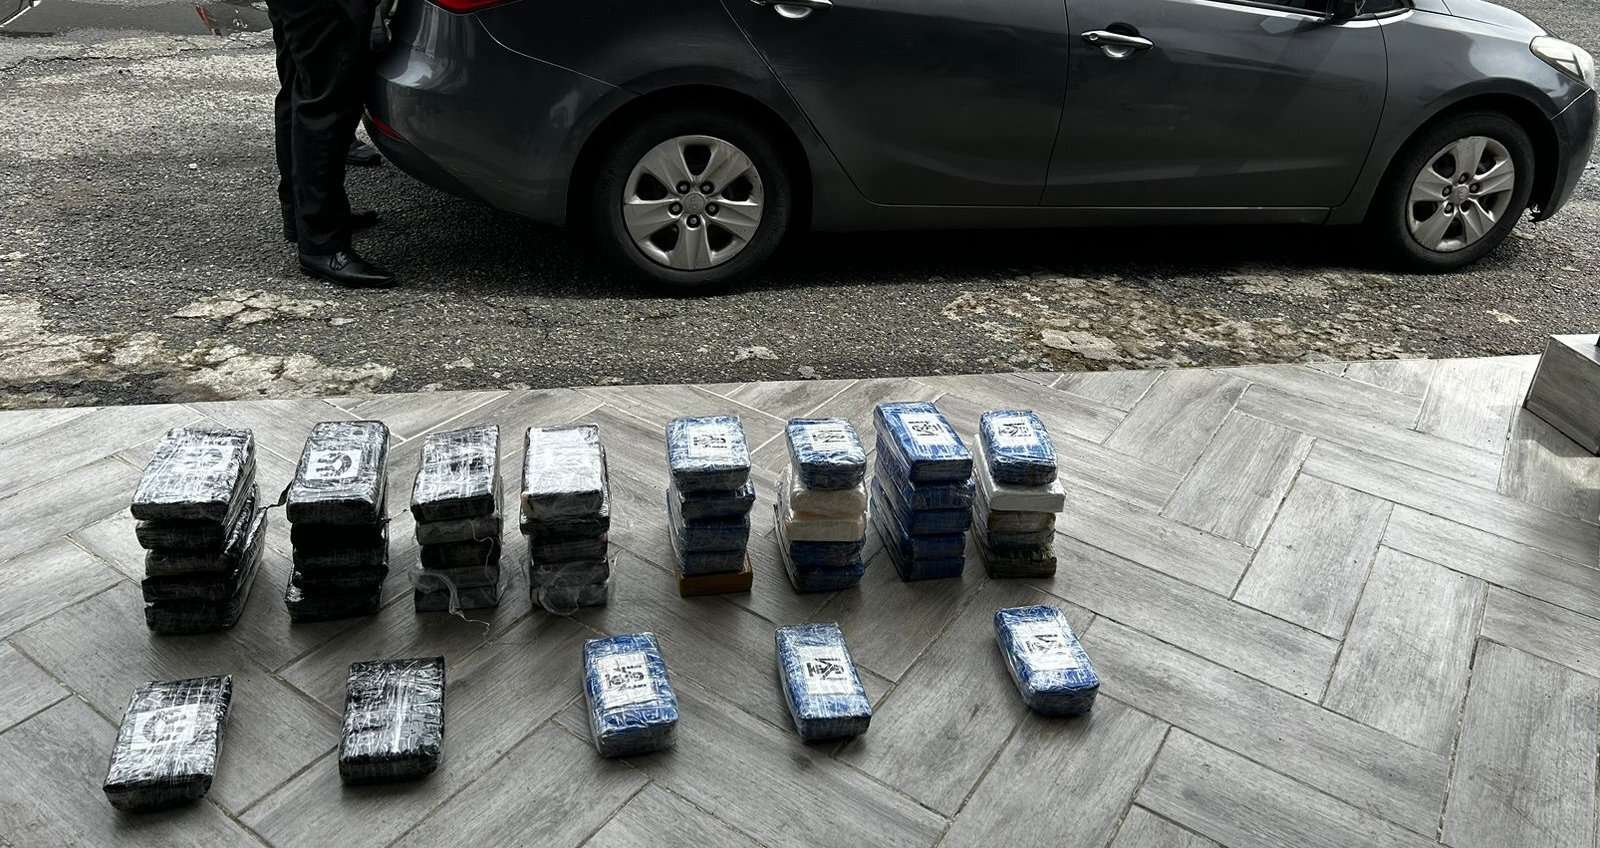 Se contabilizaron 45 paquetes de droga en el maletero del auto.